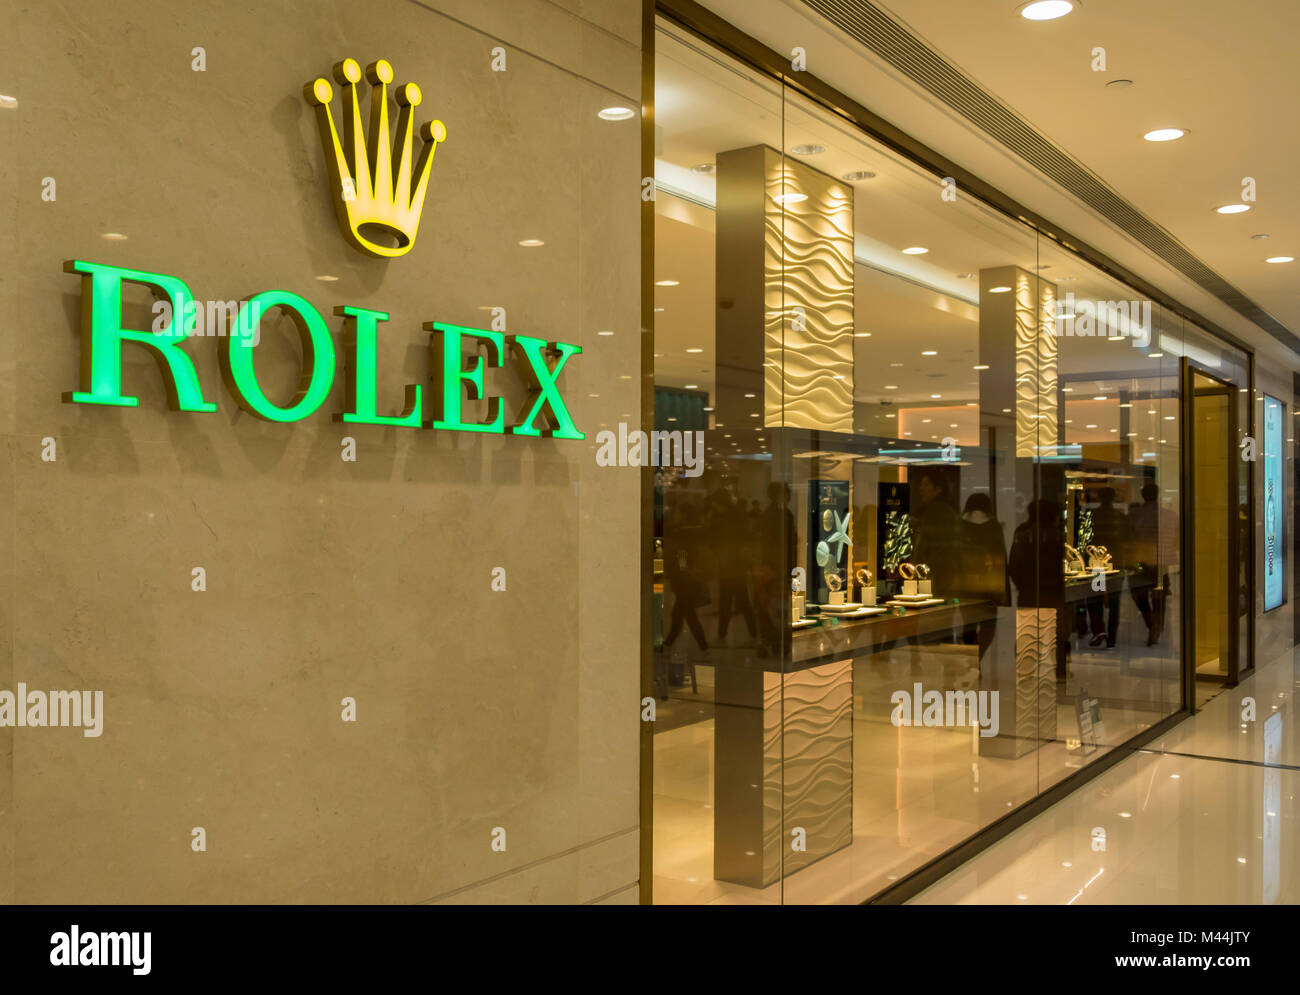 Rolex Watch Shop Banque d'image et 